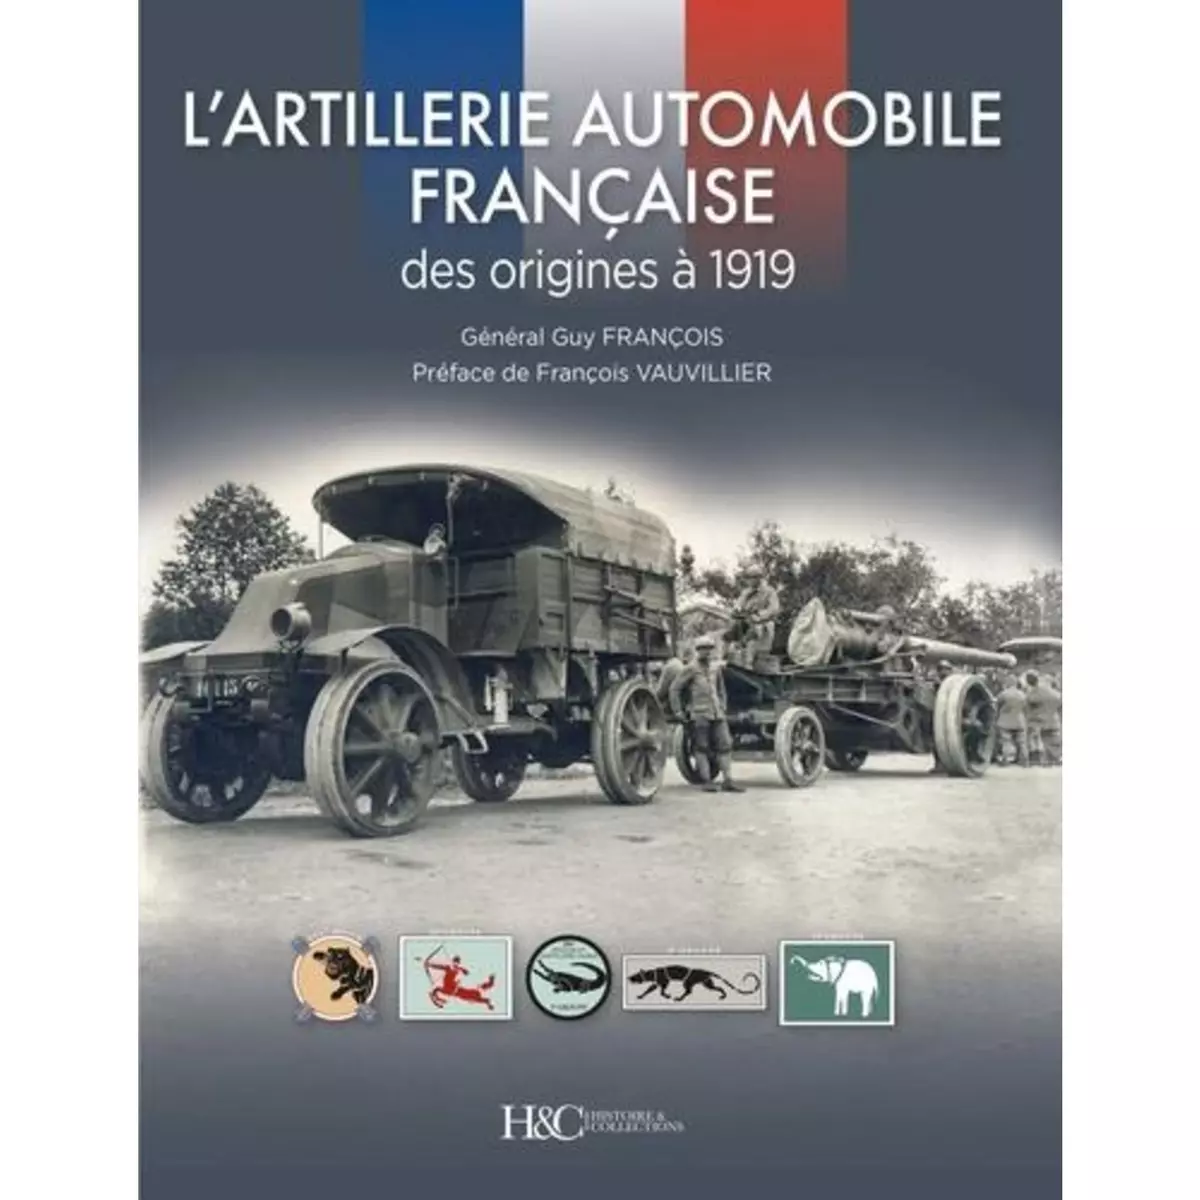  L'ARTILLERIE AUTOMOBILE FRANCAISE. DES ORIGINES A 1919, François Guy